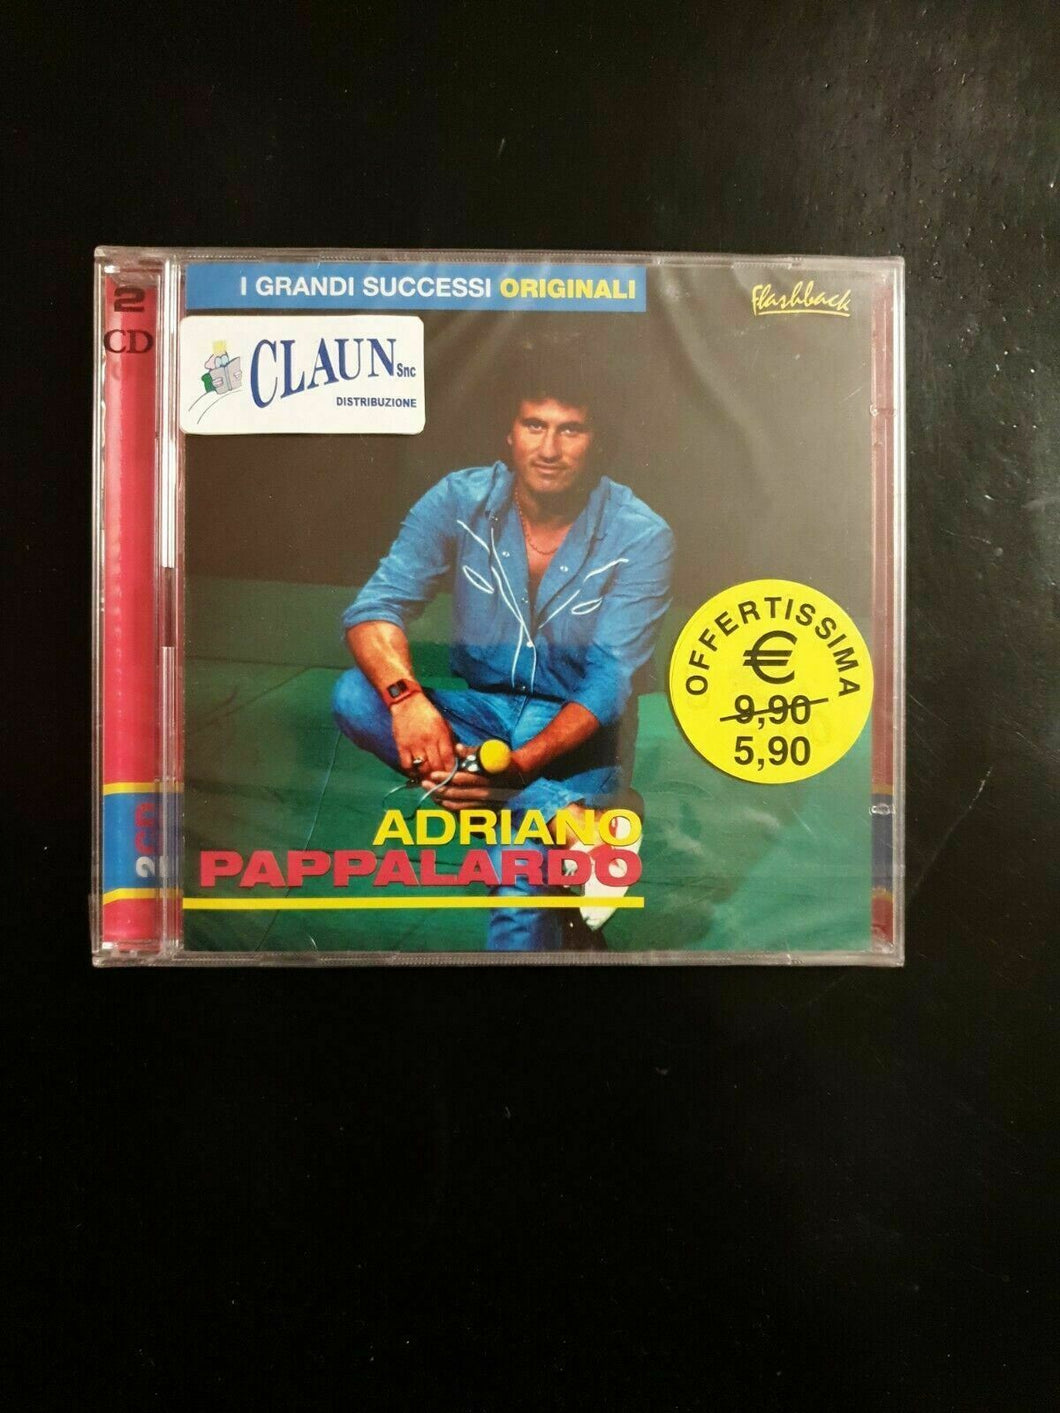 ADRIANO PAPPALARDO GRANDI SUCCESSI 2 CD NUOVO SIGILLATO.